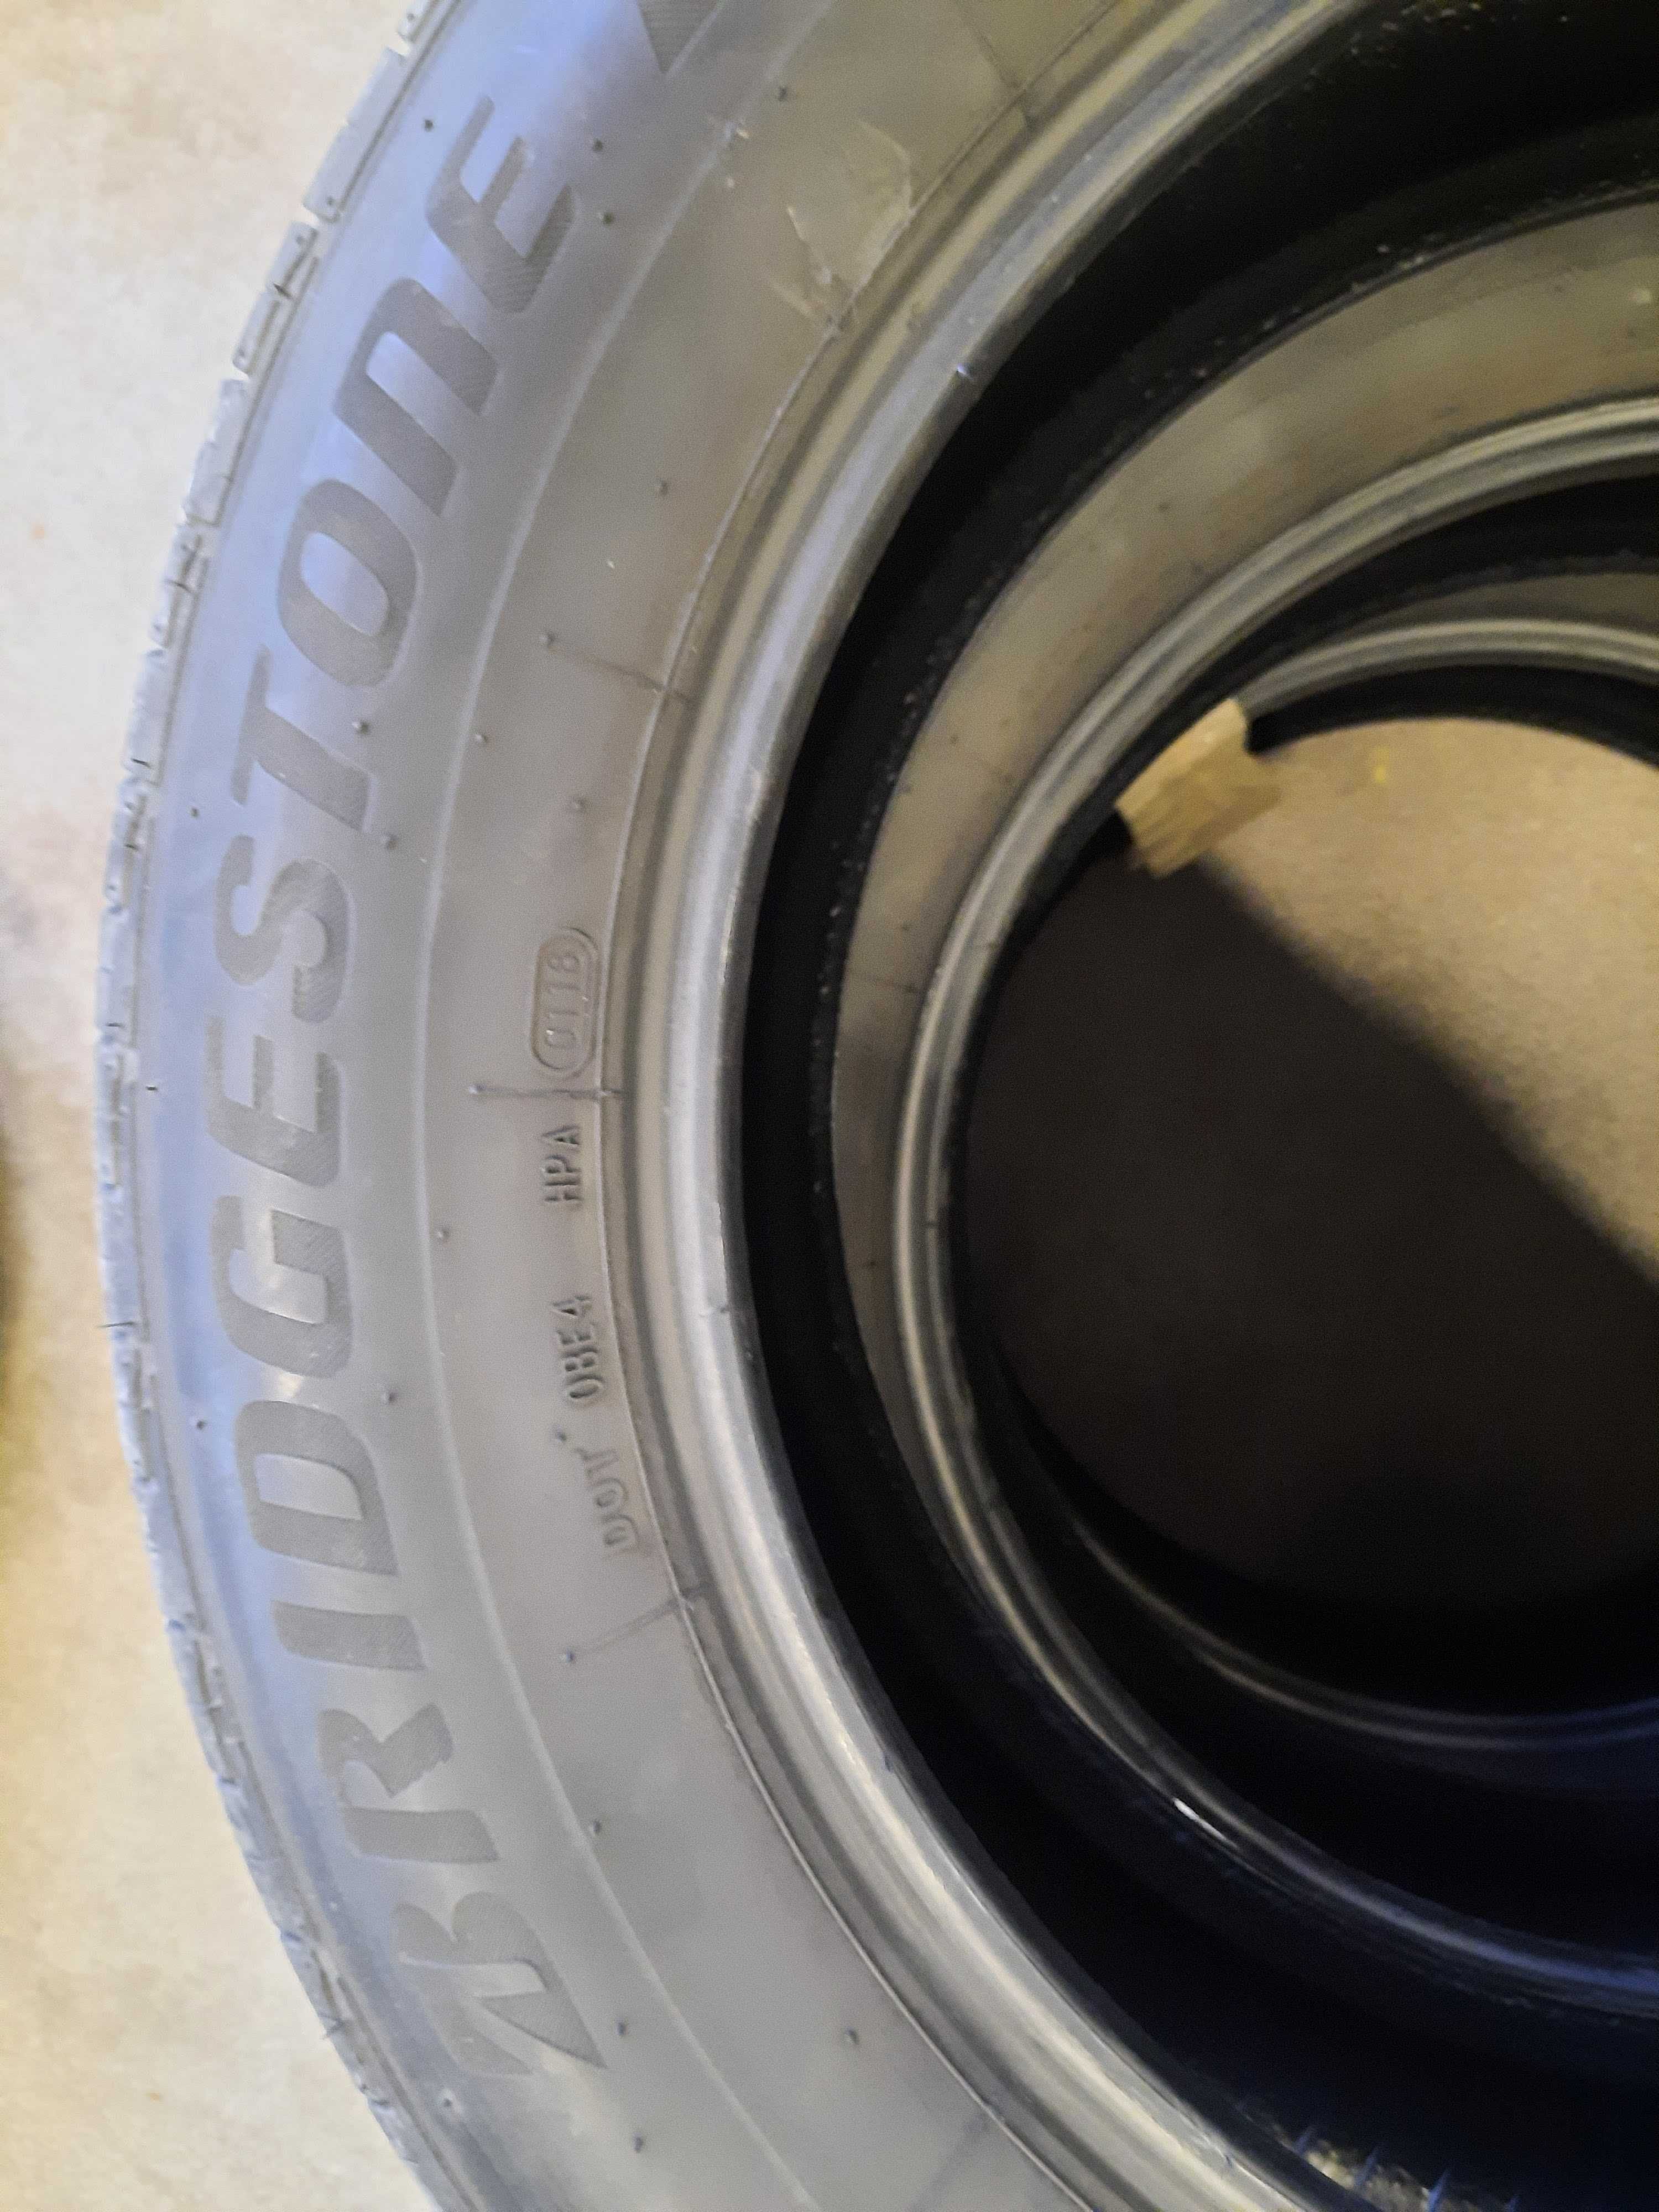 4 sztuki Bridgestone 225/60R18 M+S 5,8 mm 2018r całoroczne 4sezonowe